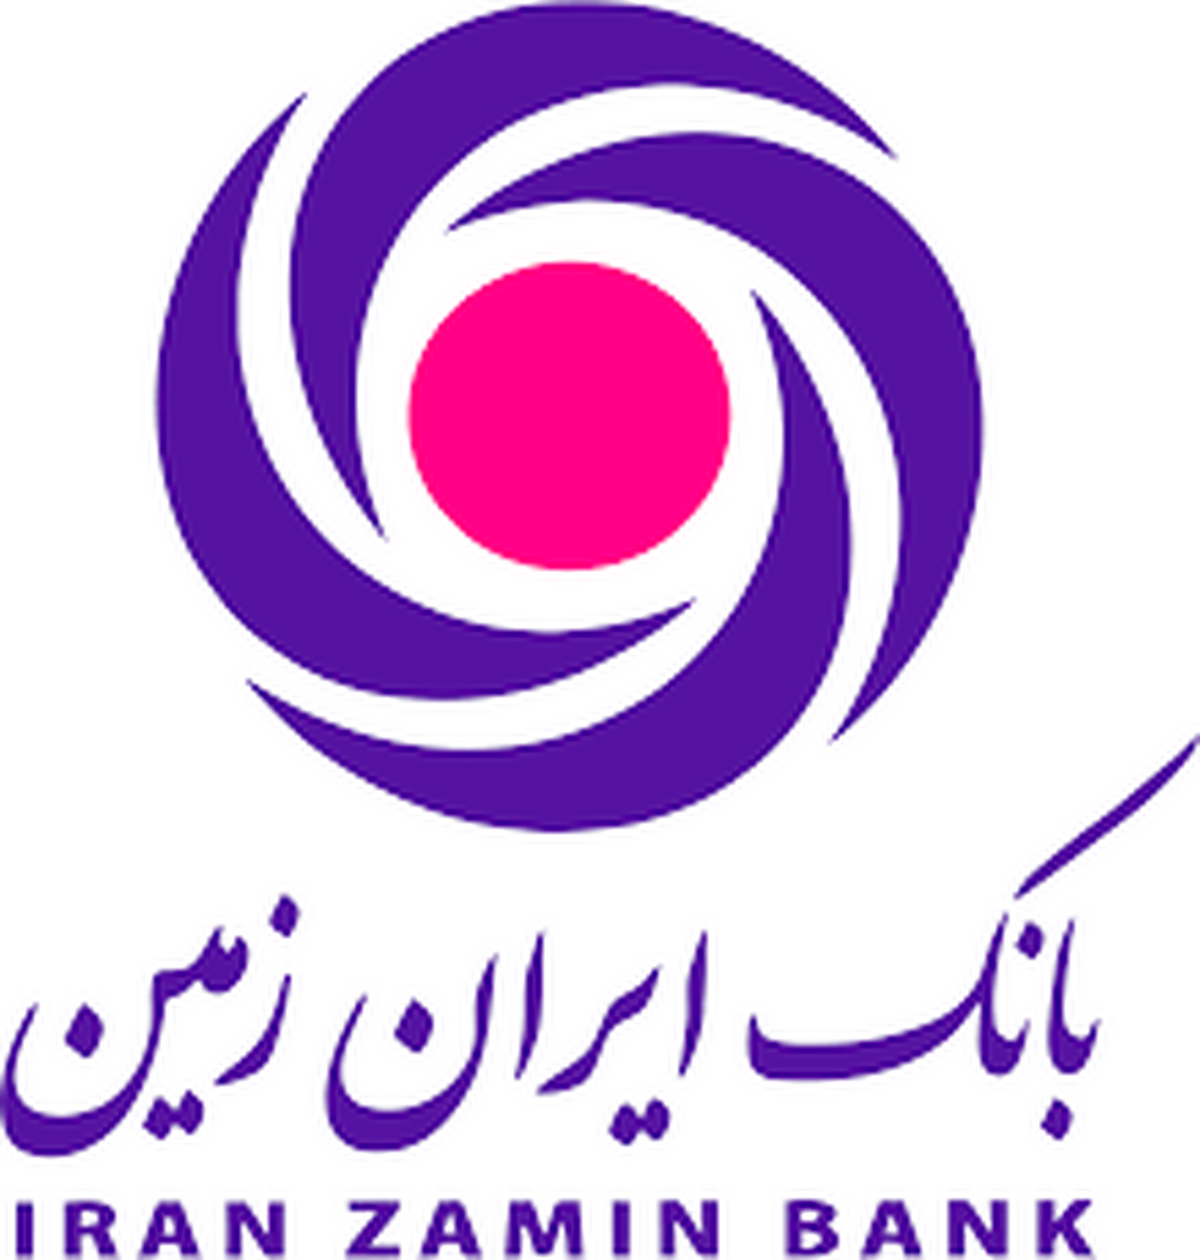 رمزساز بانک ایران زمین در راستای خدمات امن بانکداری مجازی